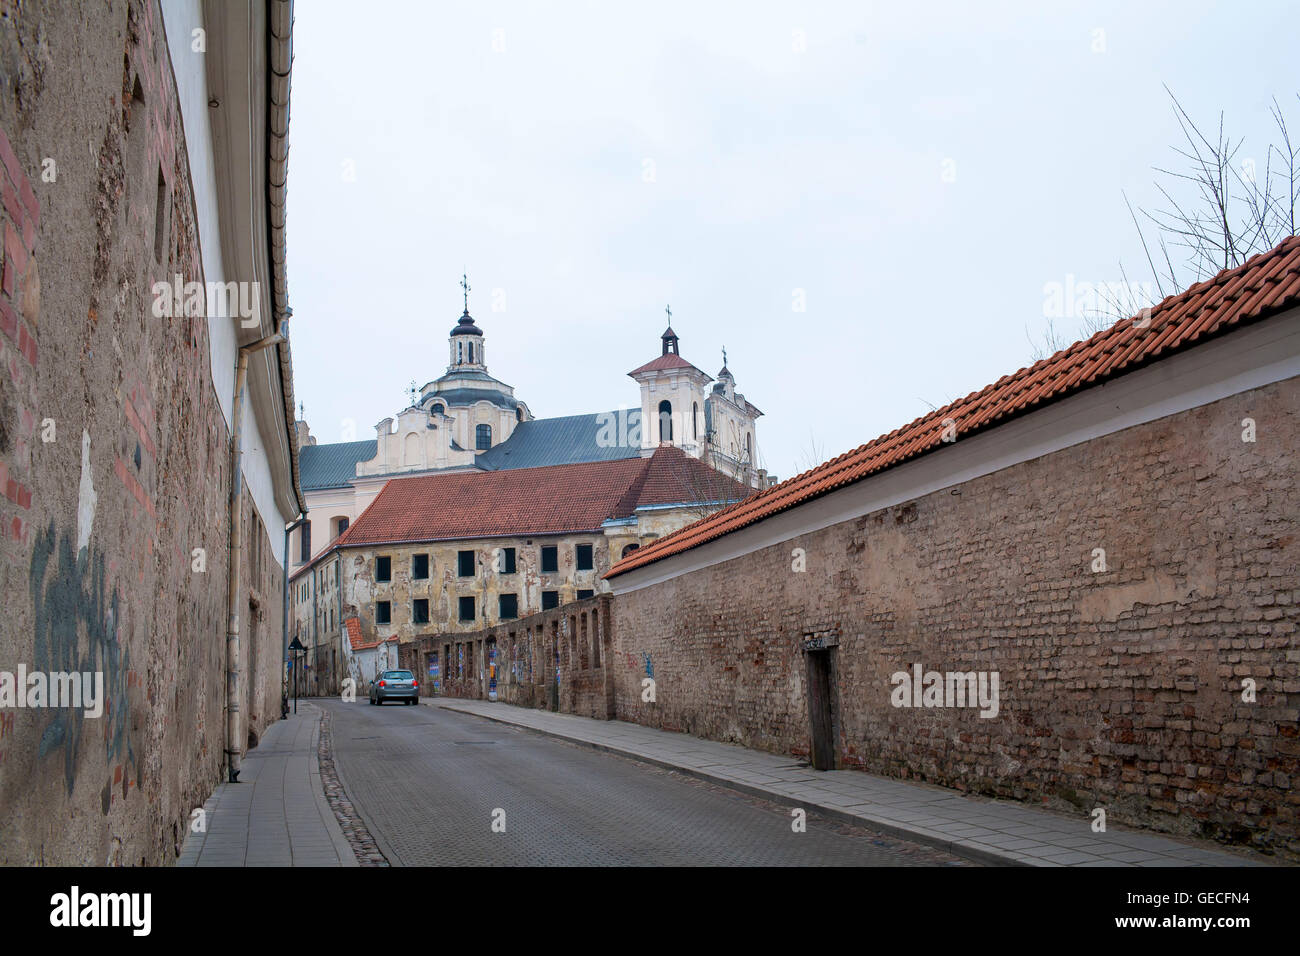 Vista VS Ignoto, una calle histórica que lleva al centro de la ciudad antigua de Vilnius, Lituania. Foto de stock